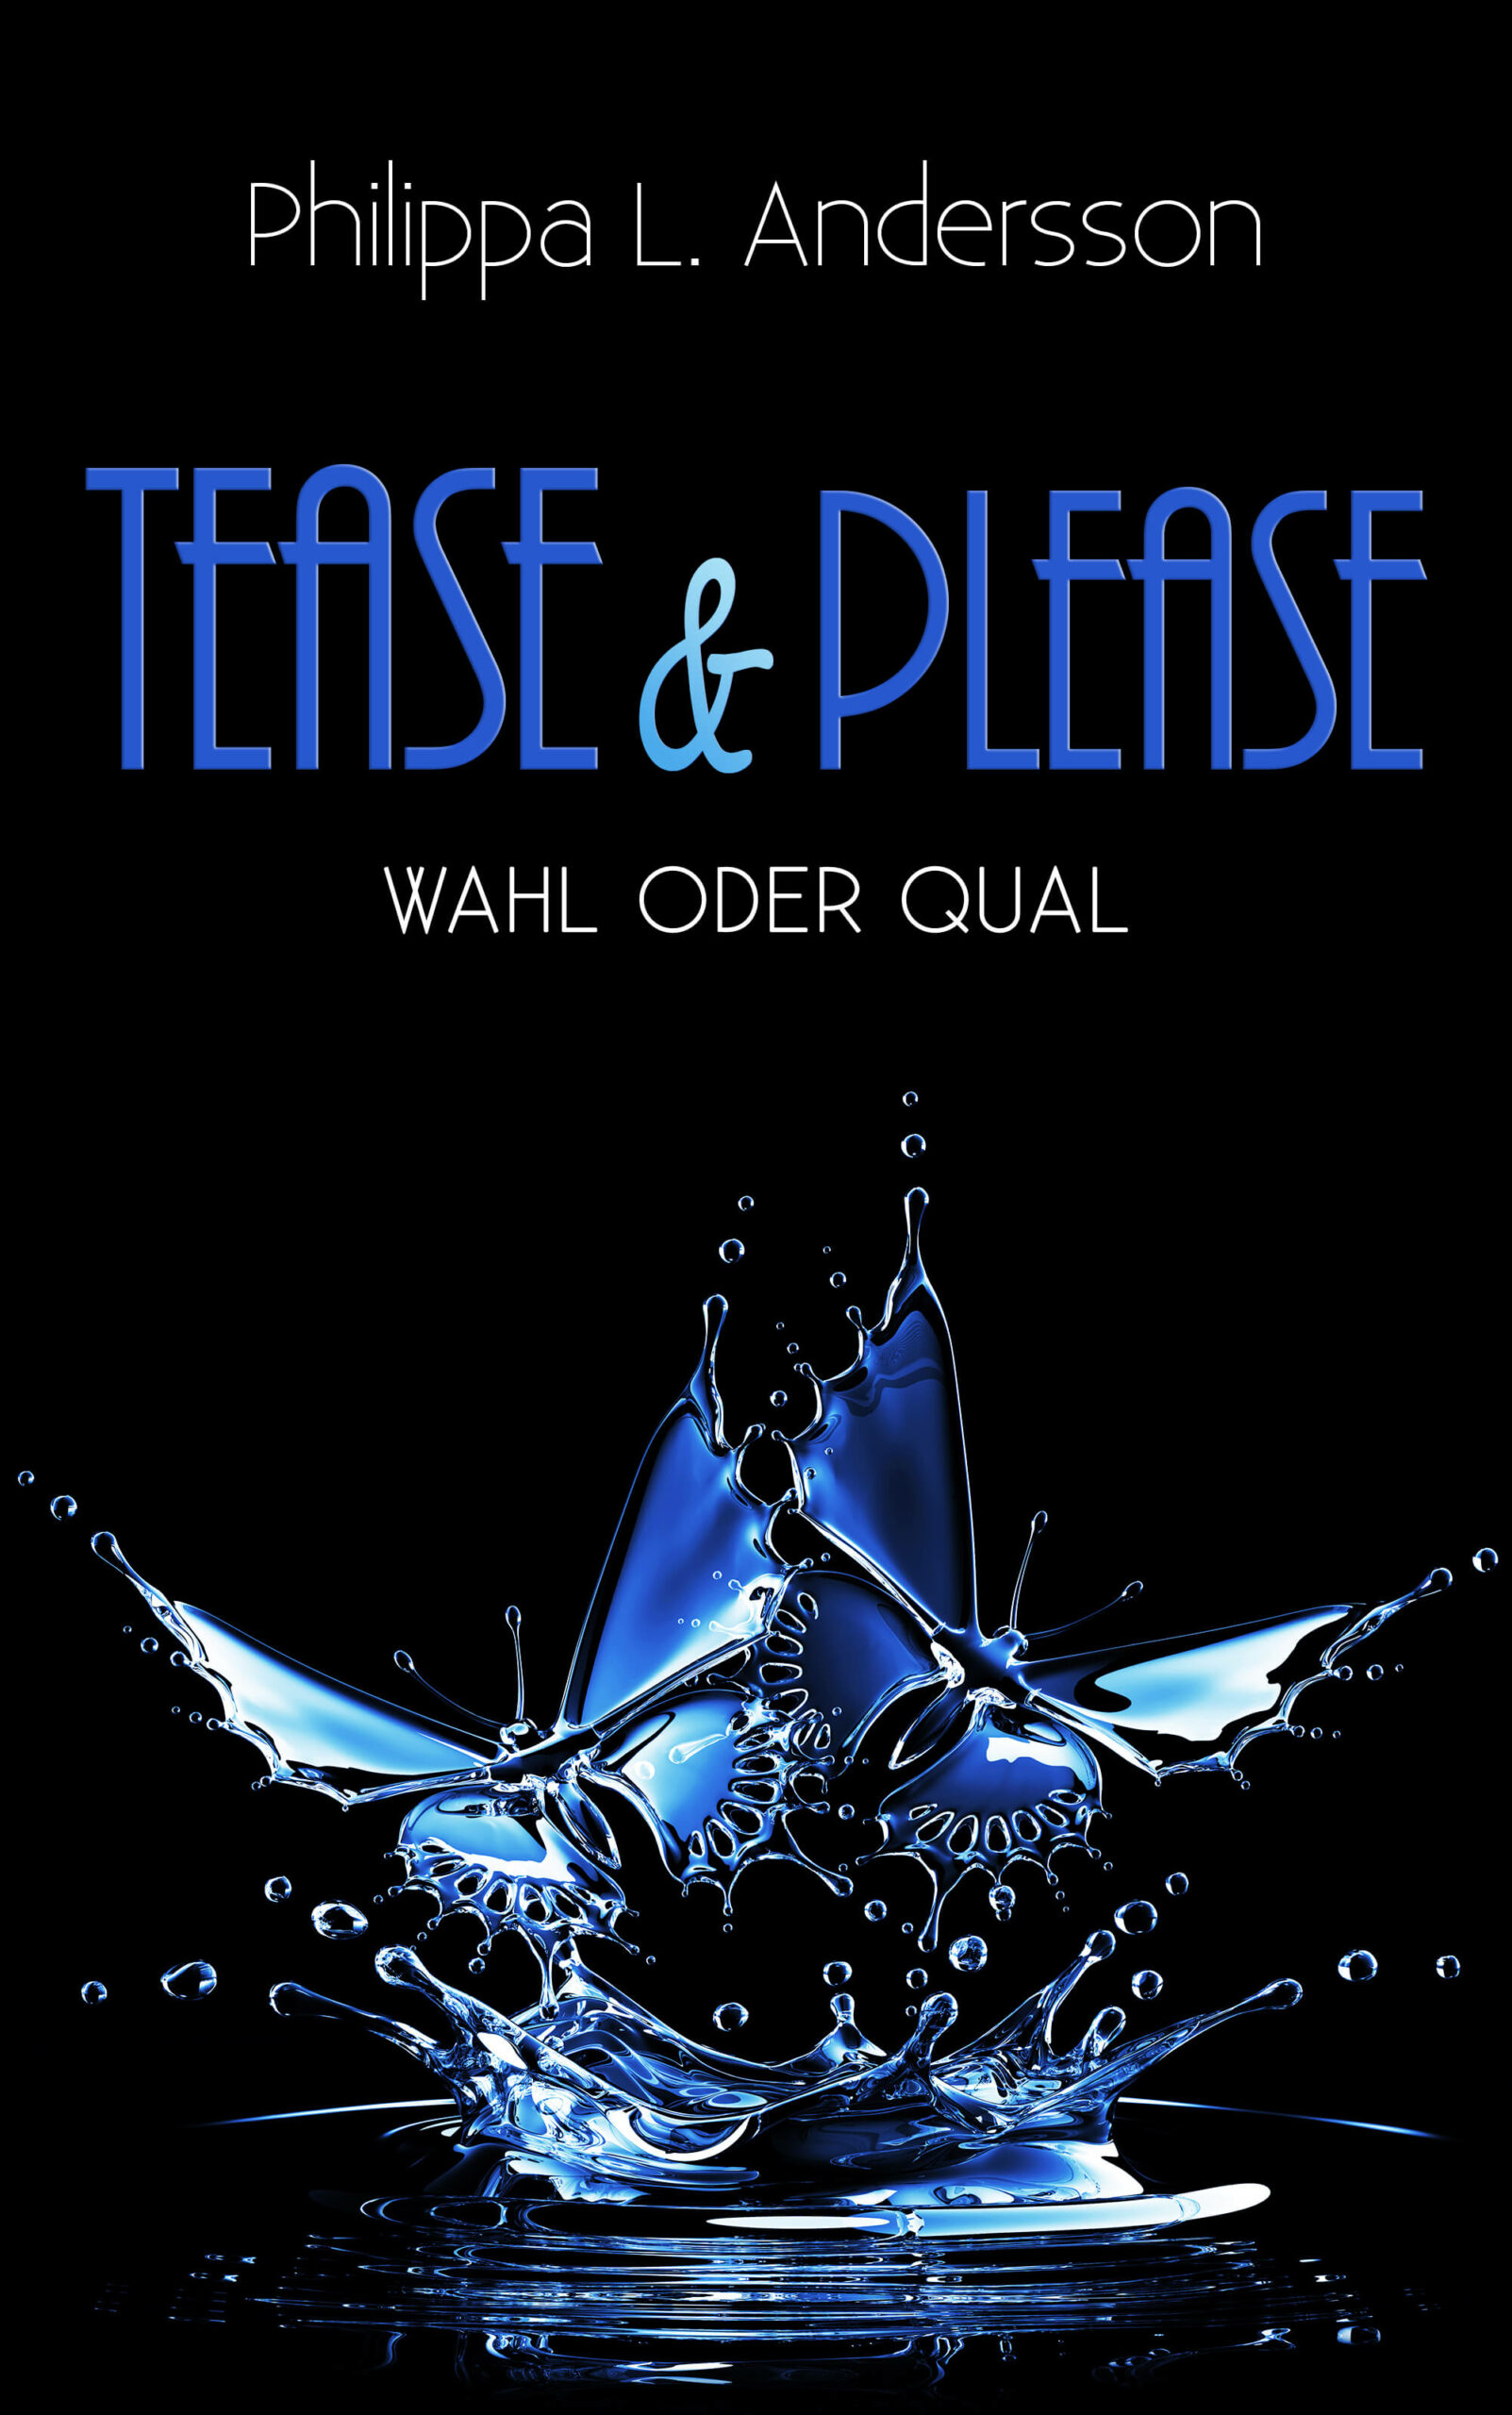 Tease & Please – Wahl oder Qual